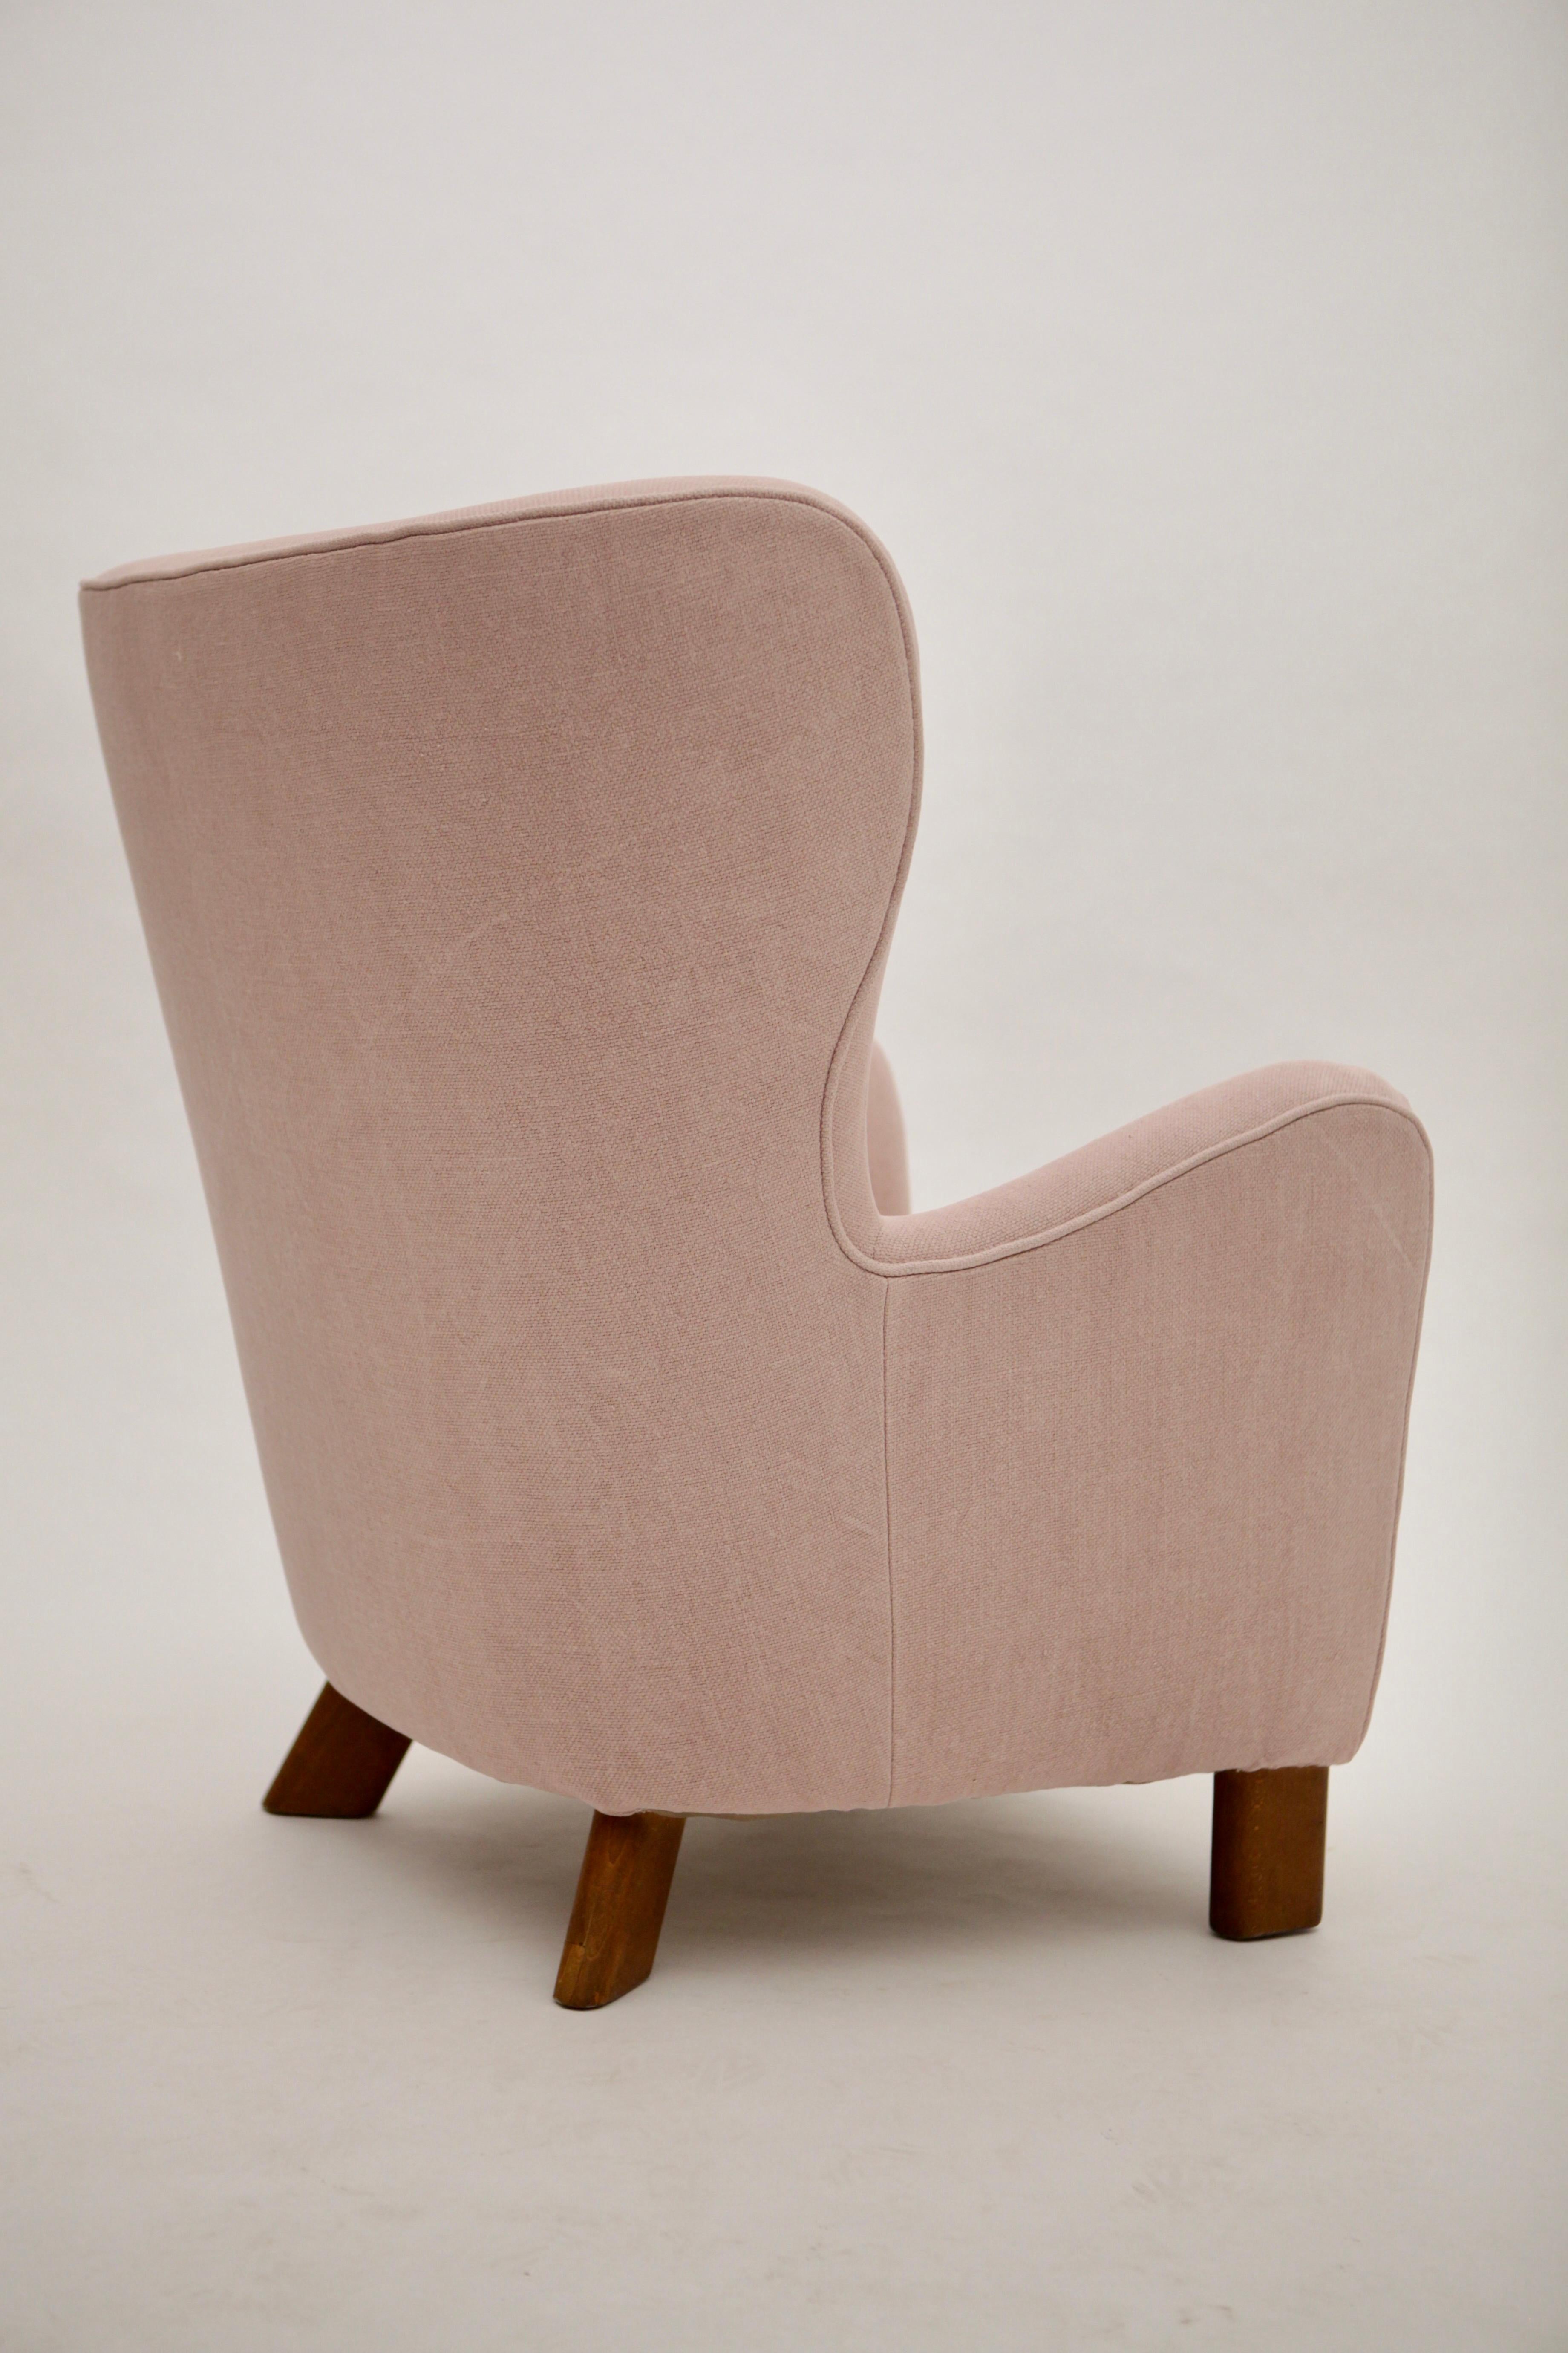 Oak Fritz Hansen High Back Lounge Chair, Model 1669, Denmark, 1940s For Sale